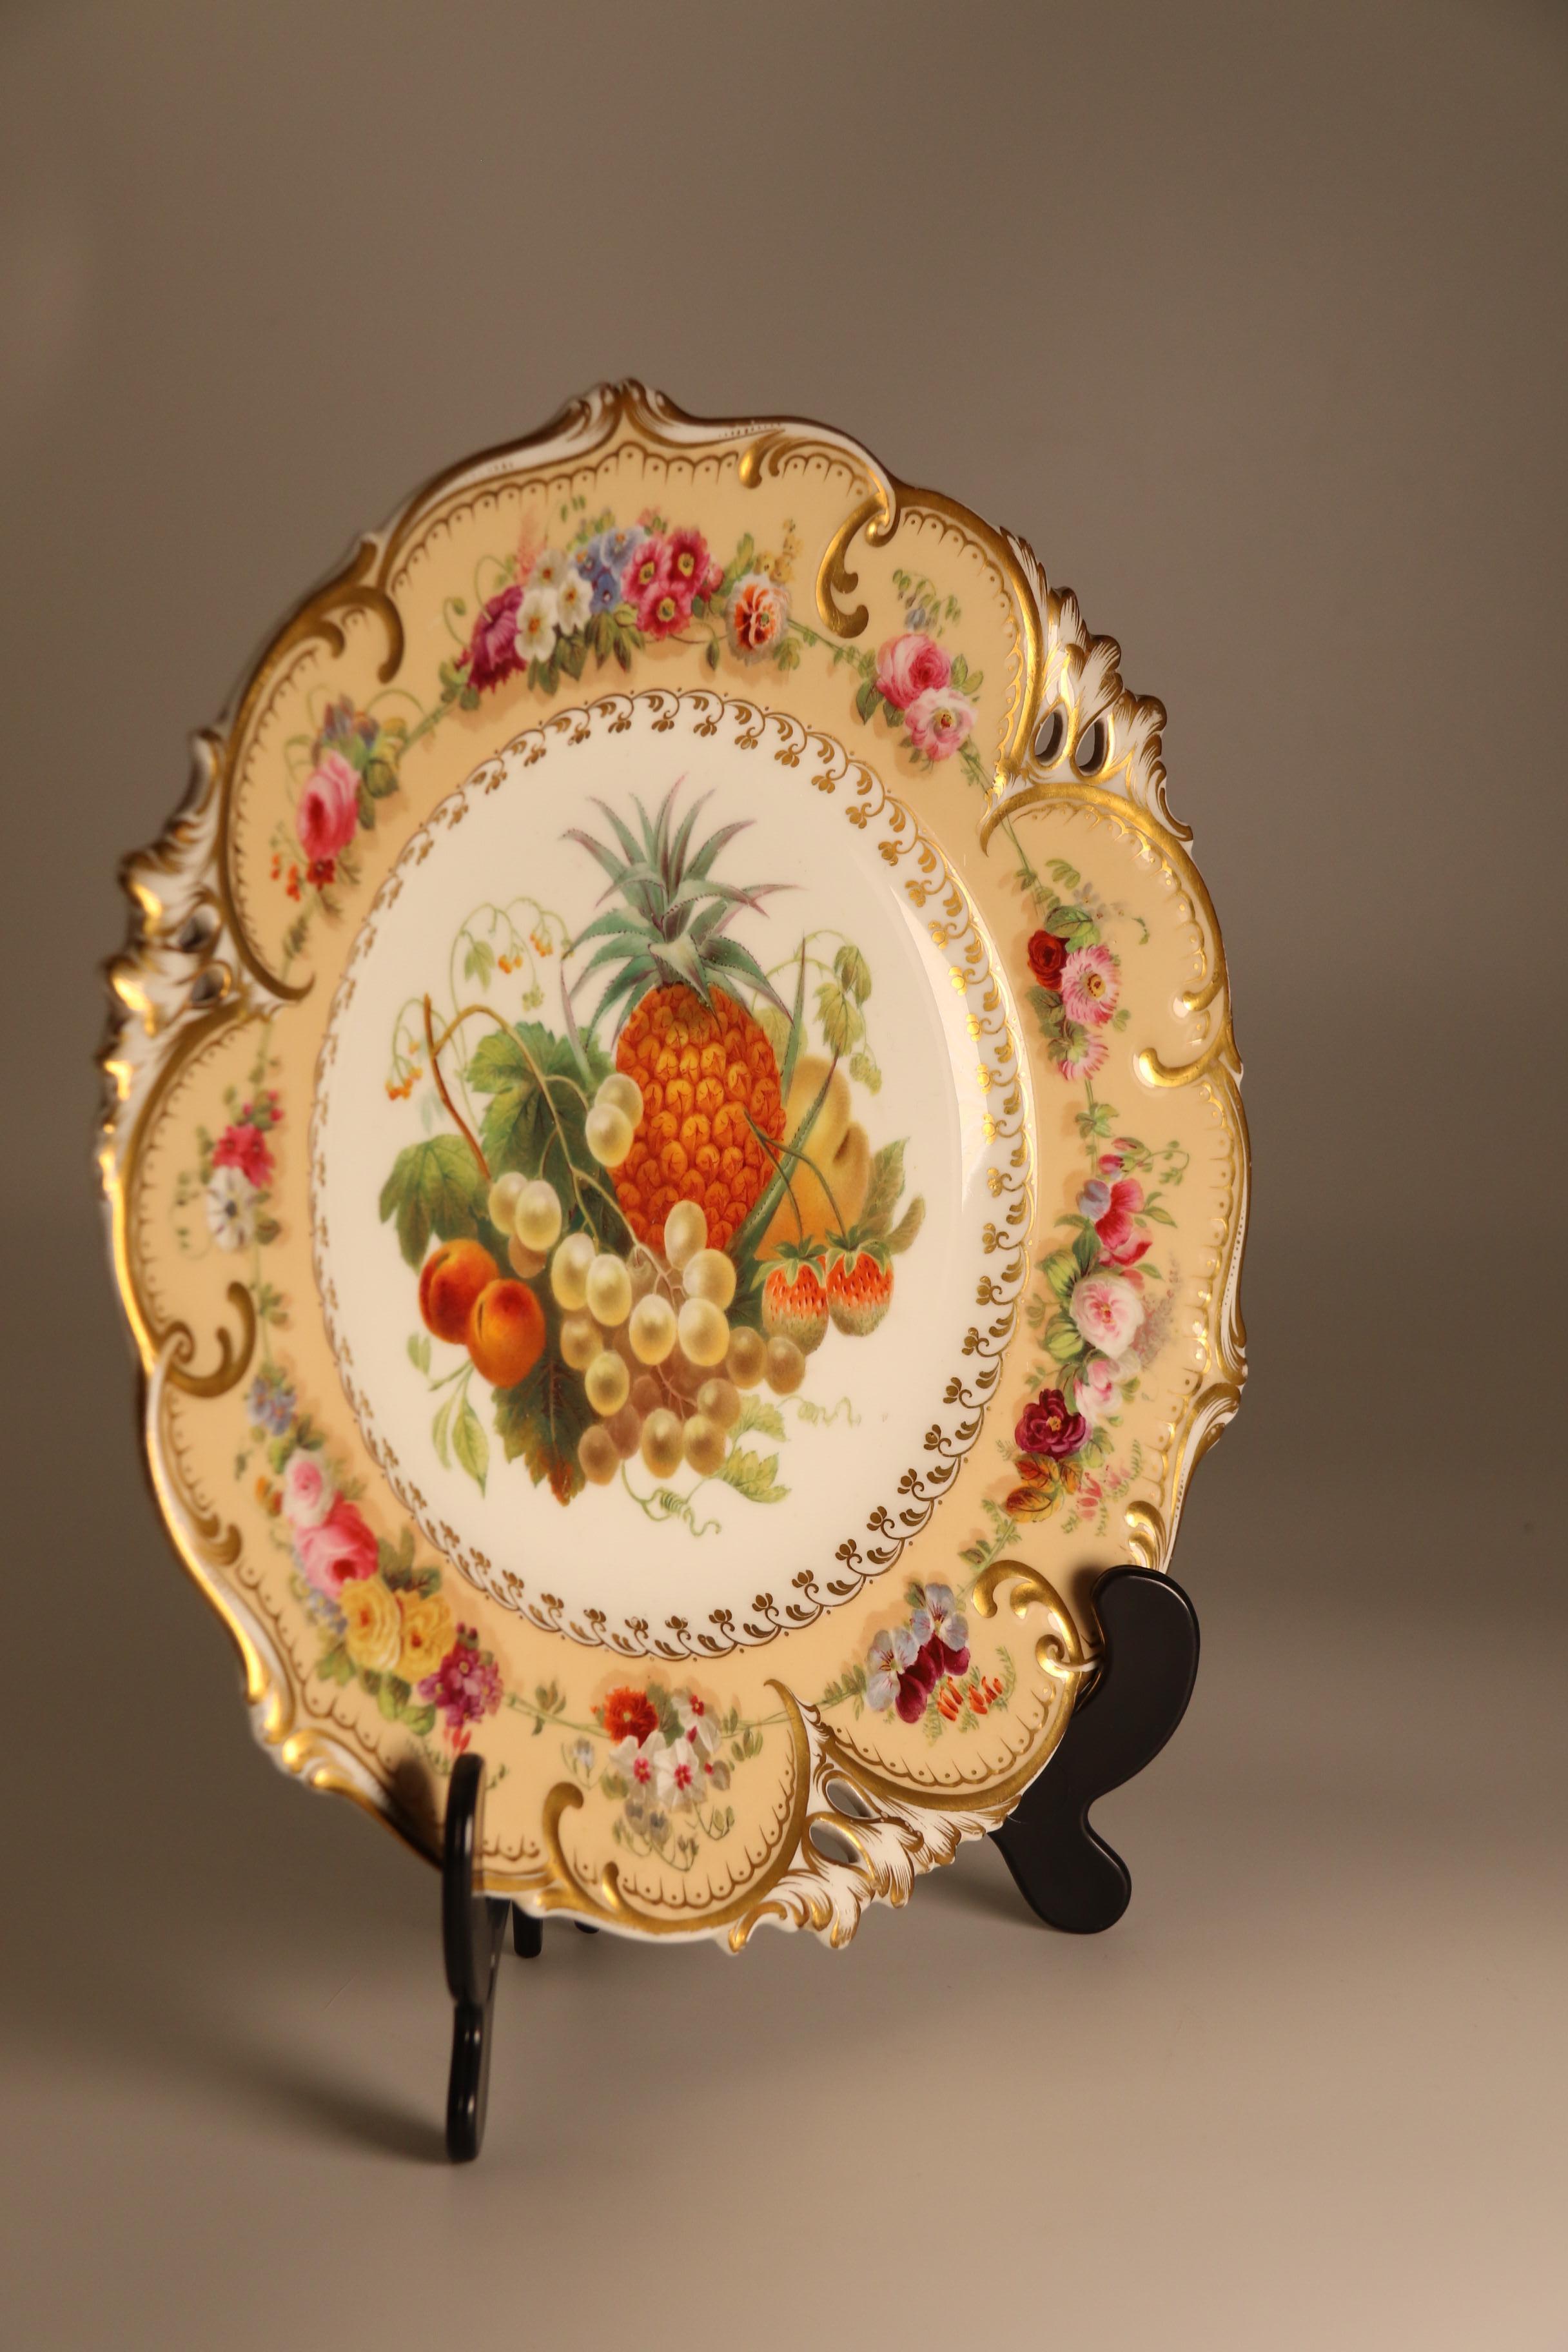 Cette superbe assiette de cabinet en porcelaine du début du XIXe siècle est très finement peinte à la main avec une riche présentation centrale de fruits et de feuillages exotiques sur un fond blanc bordé d'un délicat motif floral doré. Le cadre